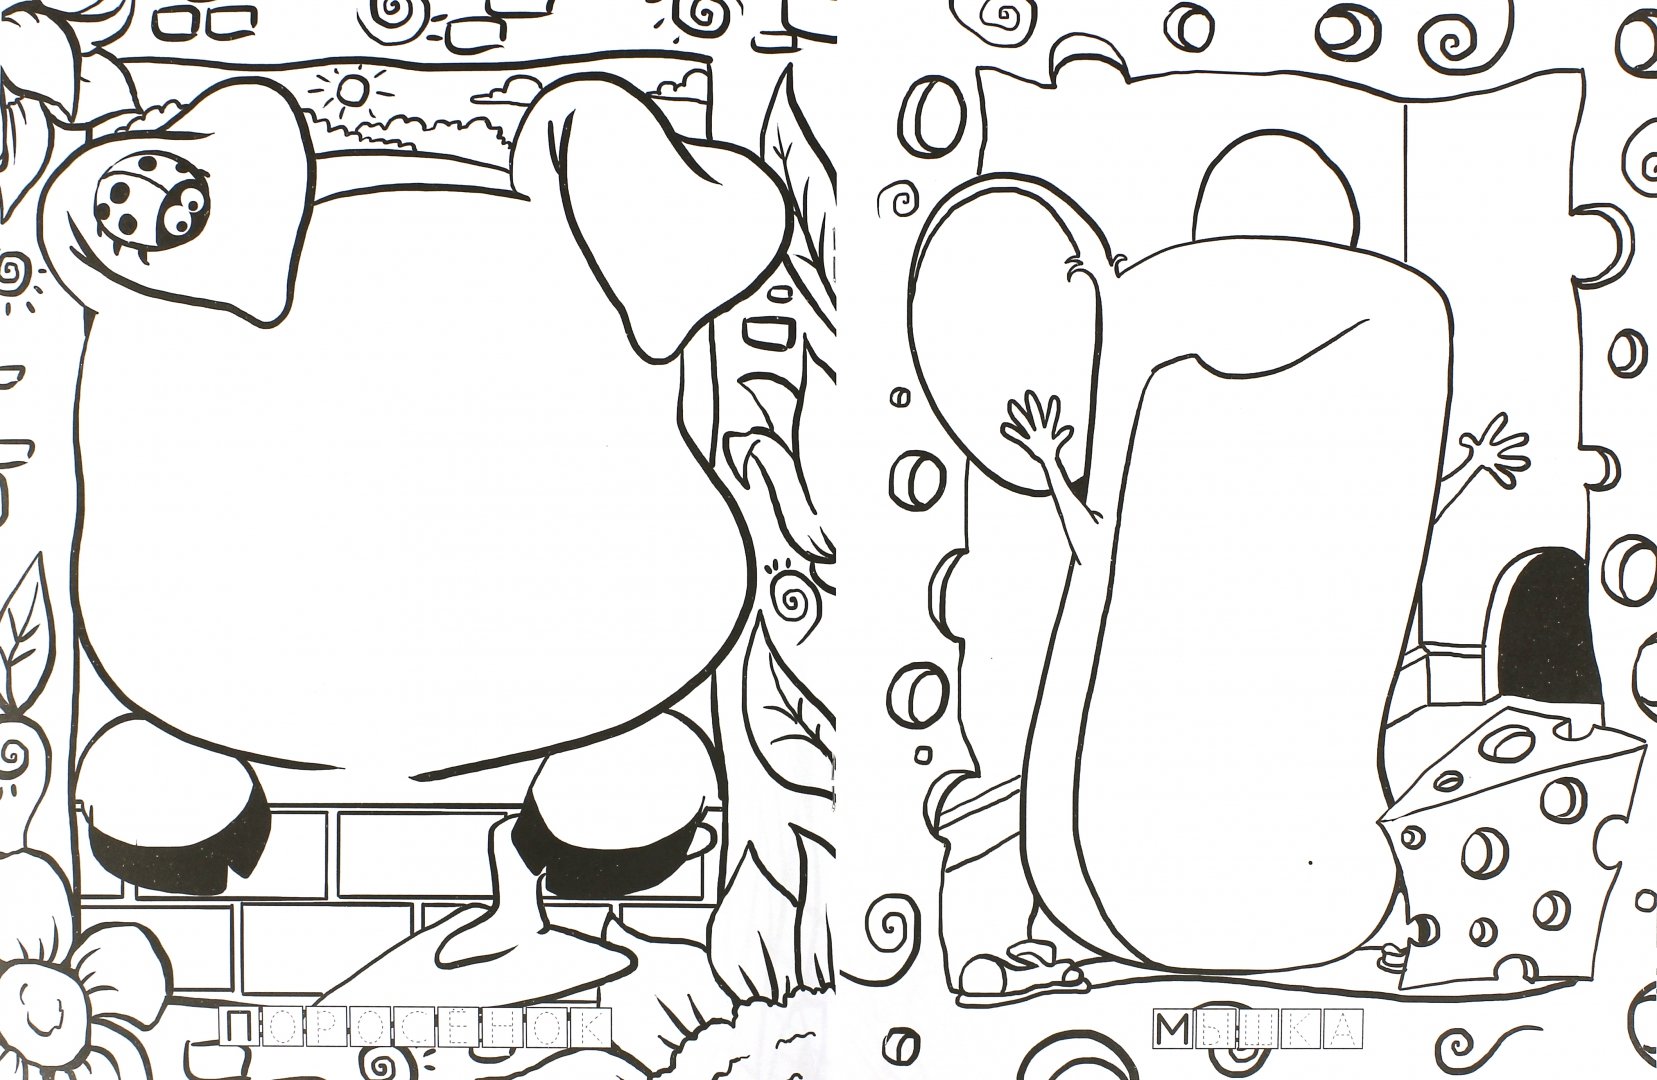 Иллюстрация 1 из 5 для Веселый зоопарк. Шкодный мышонок и другие герои | Лабиринт - книги. Источник: Лабиринт